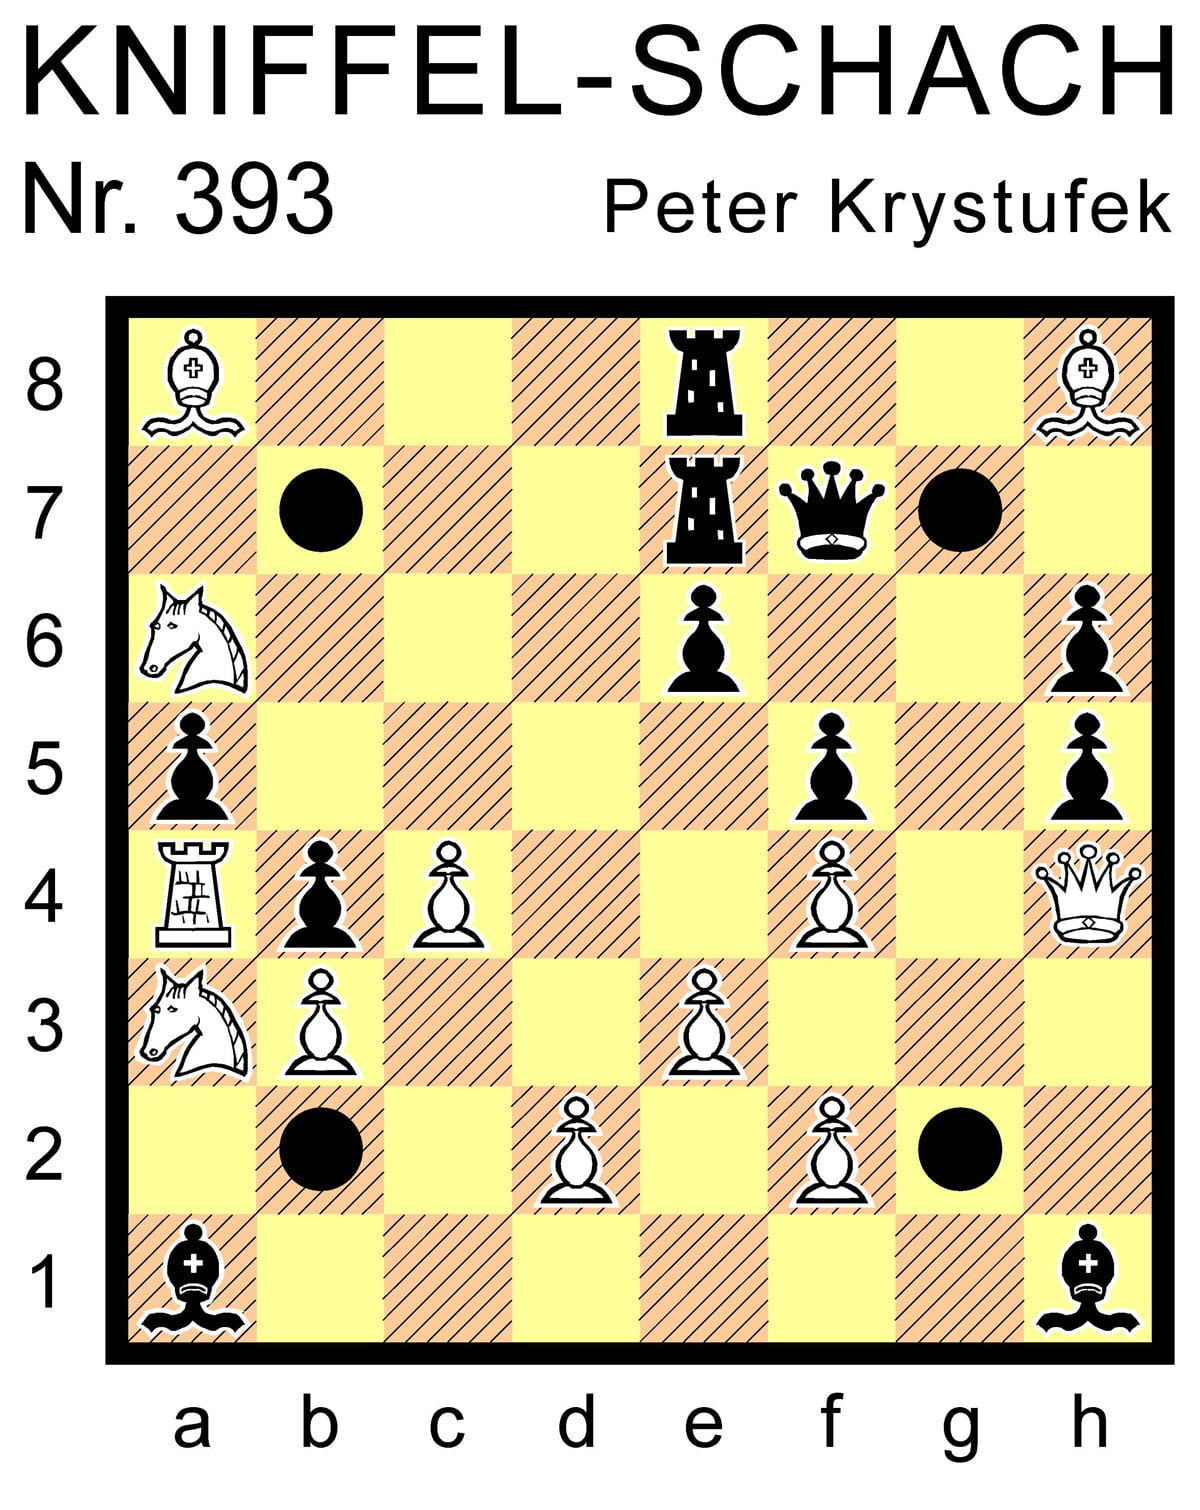 Kniffel-Schach Nr. 393